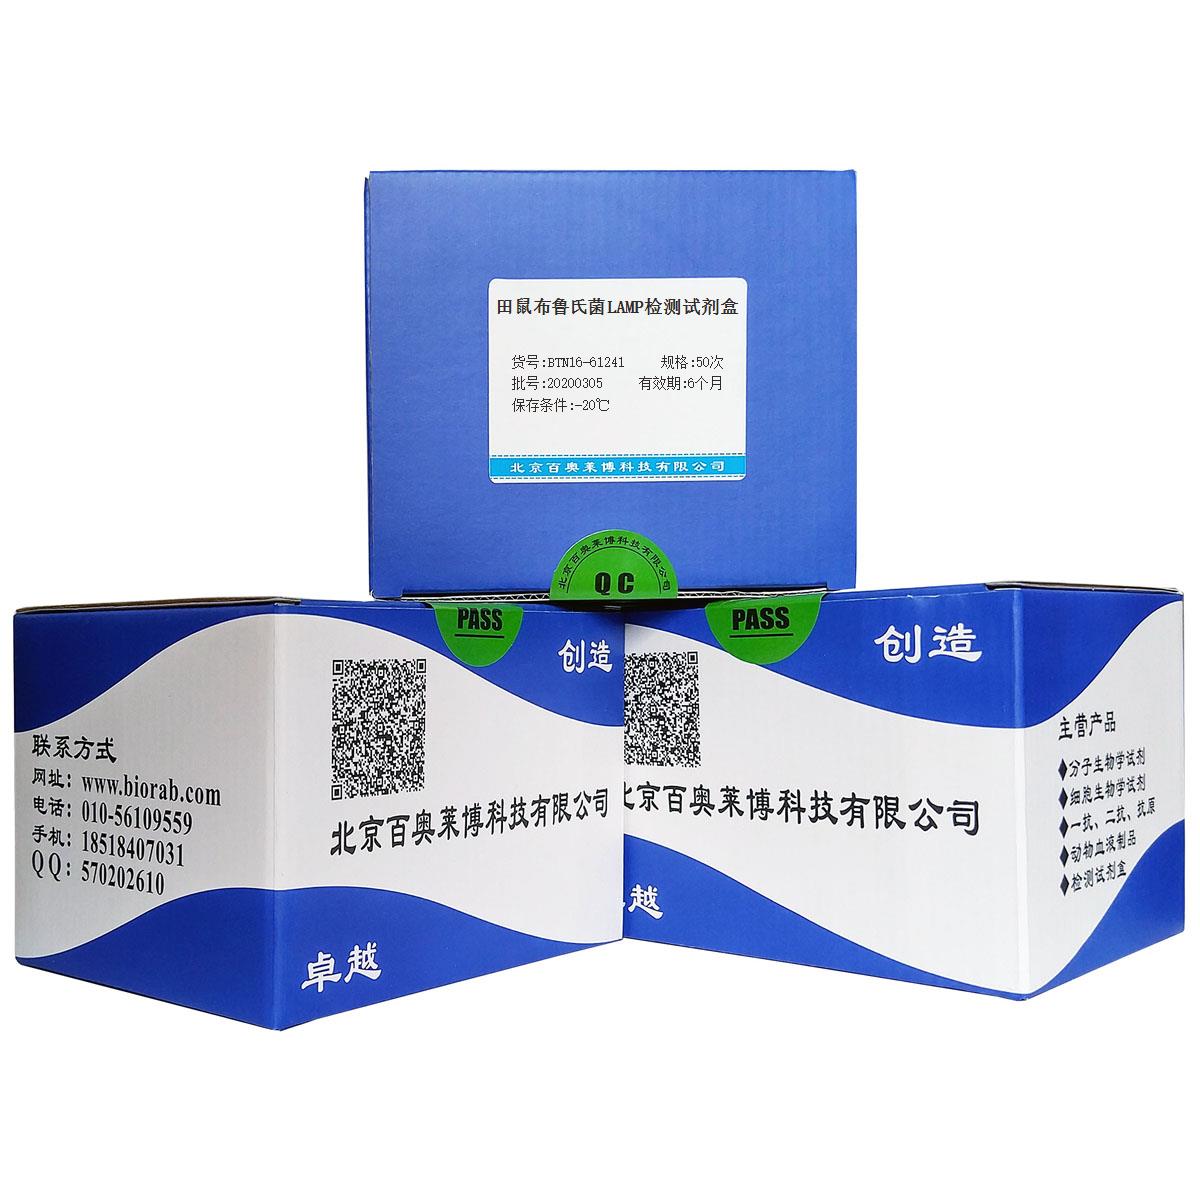 田鼠布鲁氏菌LAMP检测试剂盒北京供应商